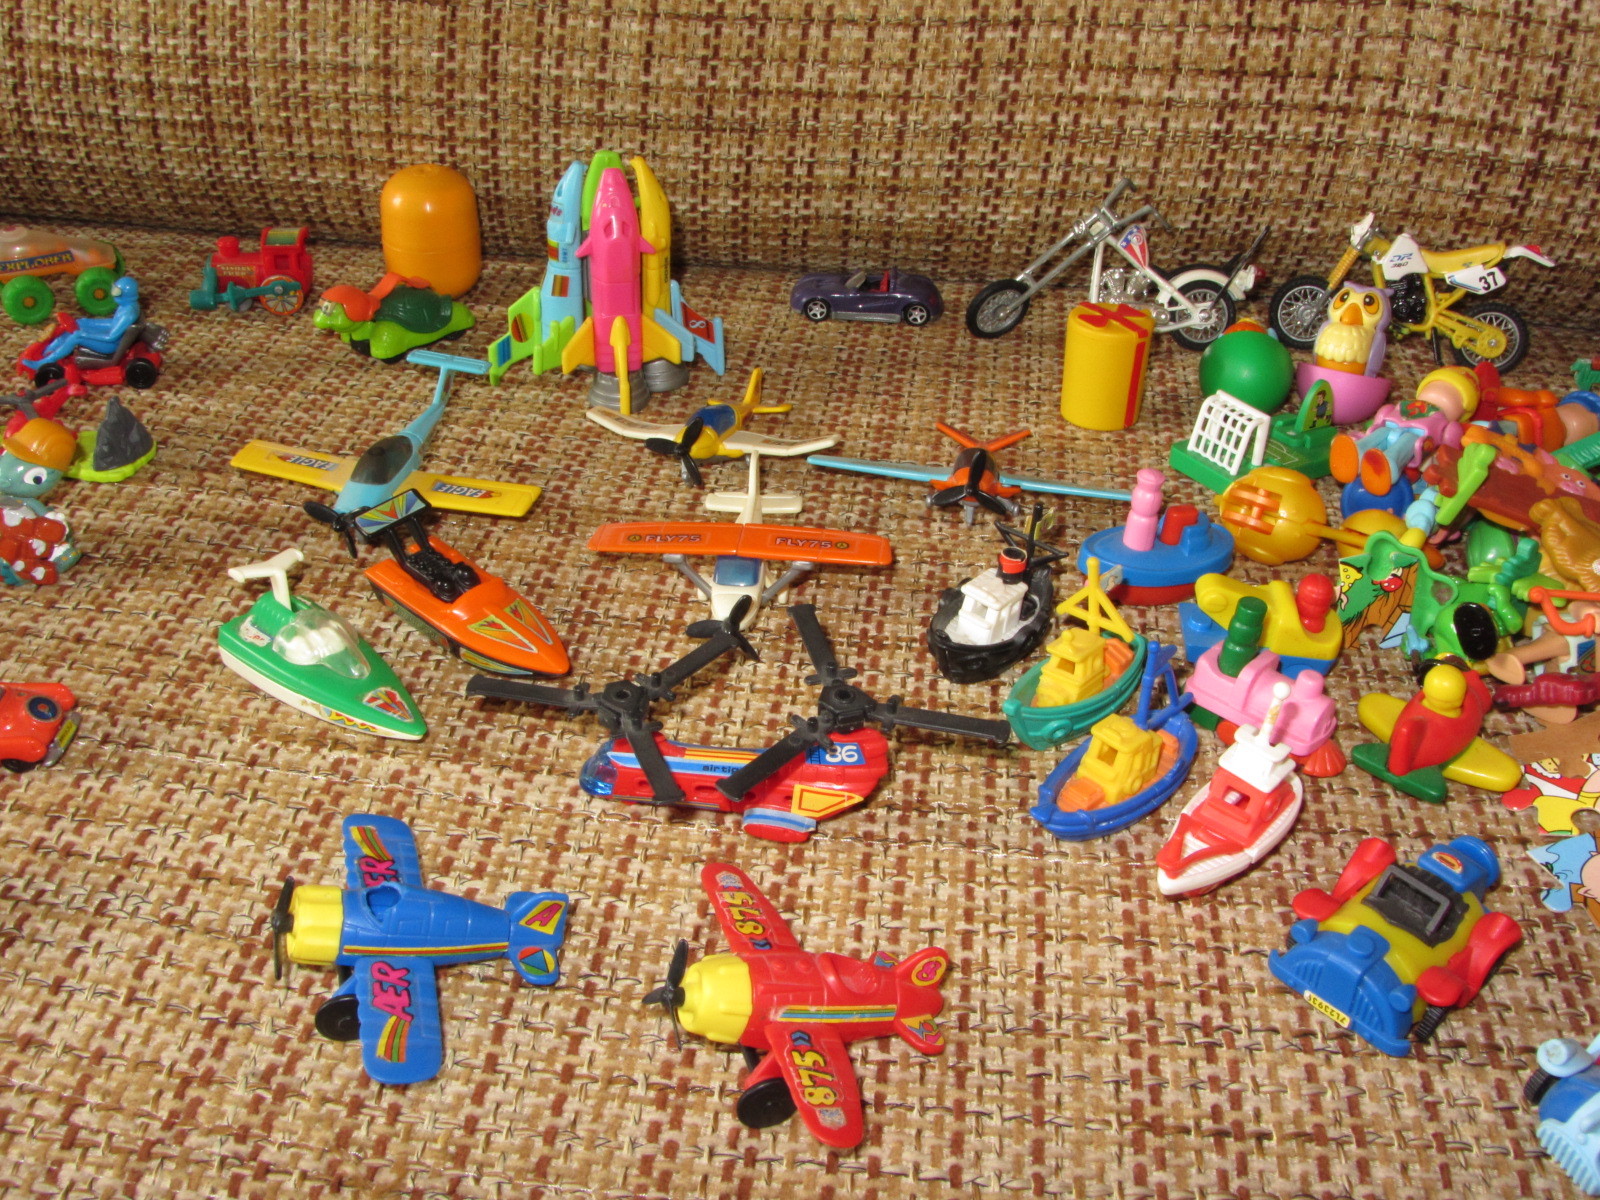 Игрушки из киндера 90 х. Коллекции игрушек Киндер сюрприз 90е. Киндеры 90-х. Игрушки Киндер сюрприз 90-х. Коллекция игрушек Киндер 1990х.